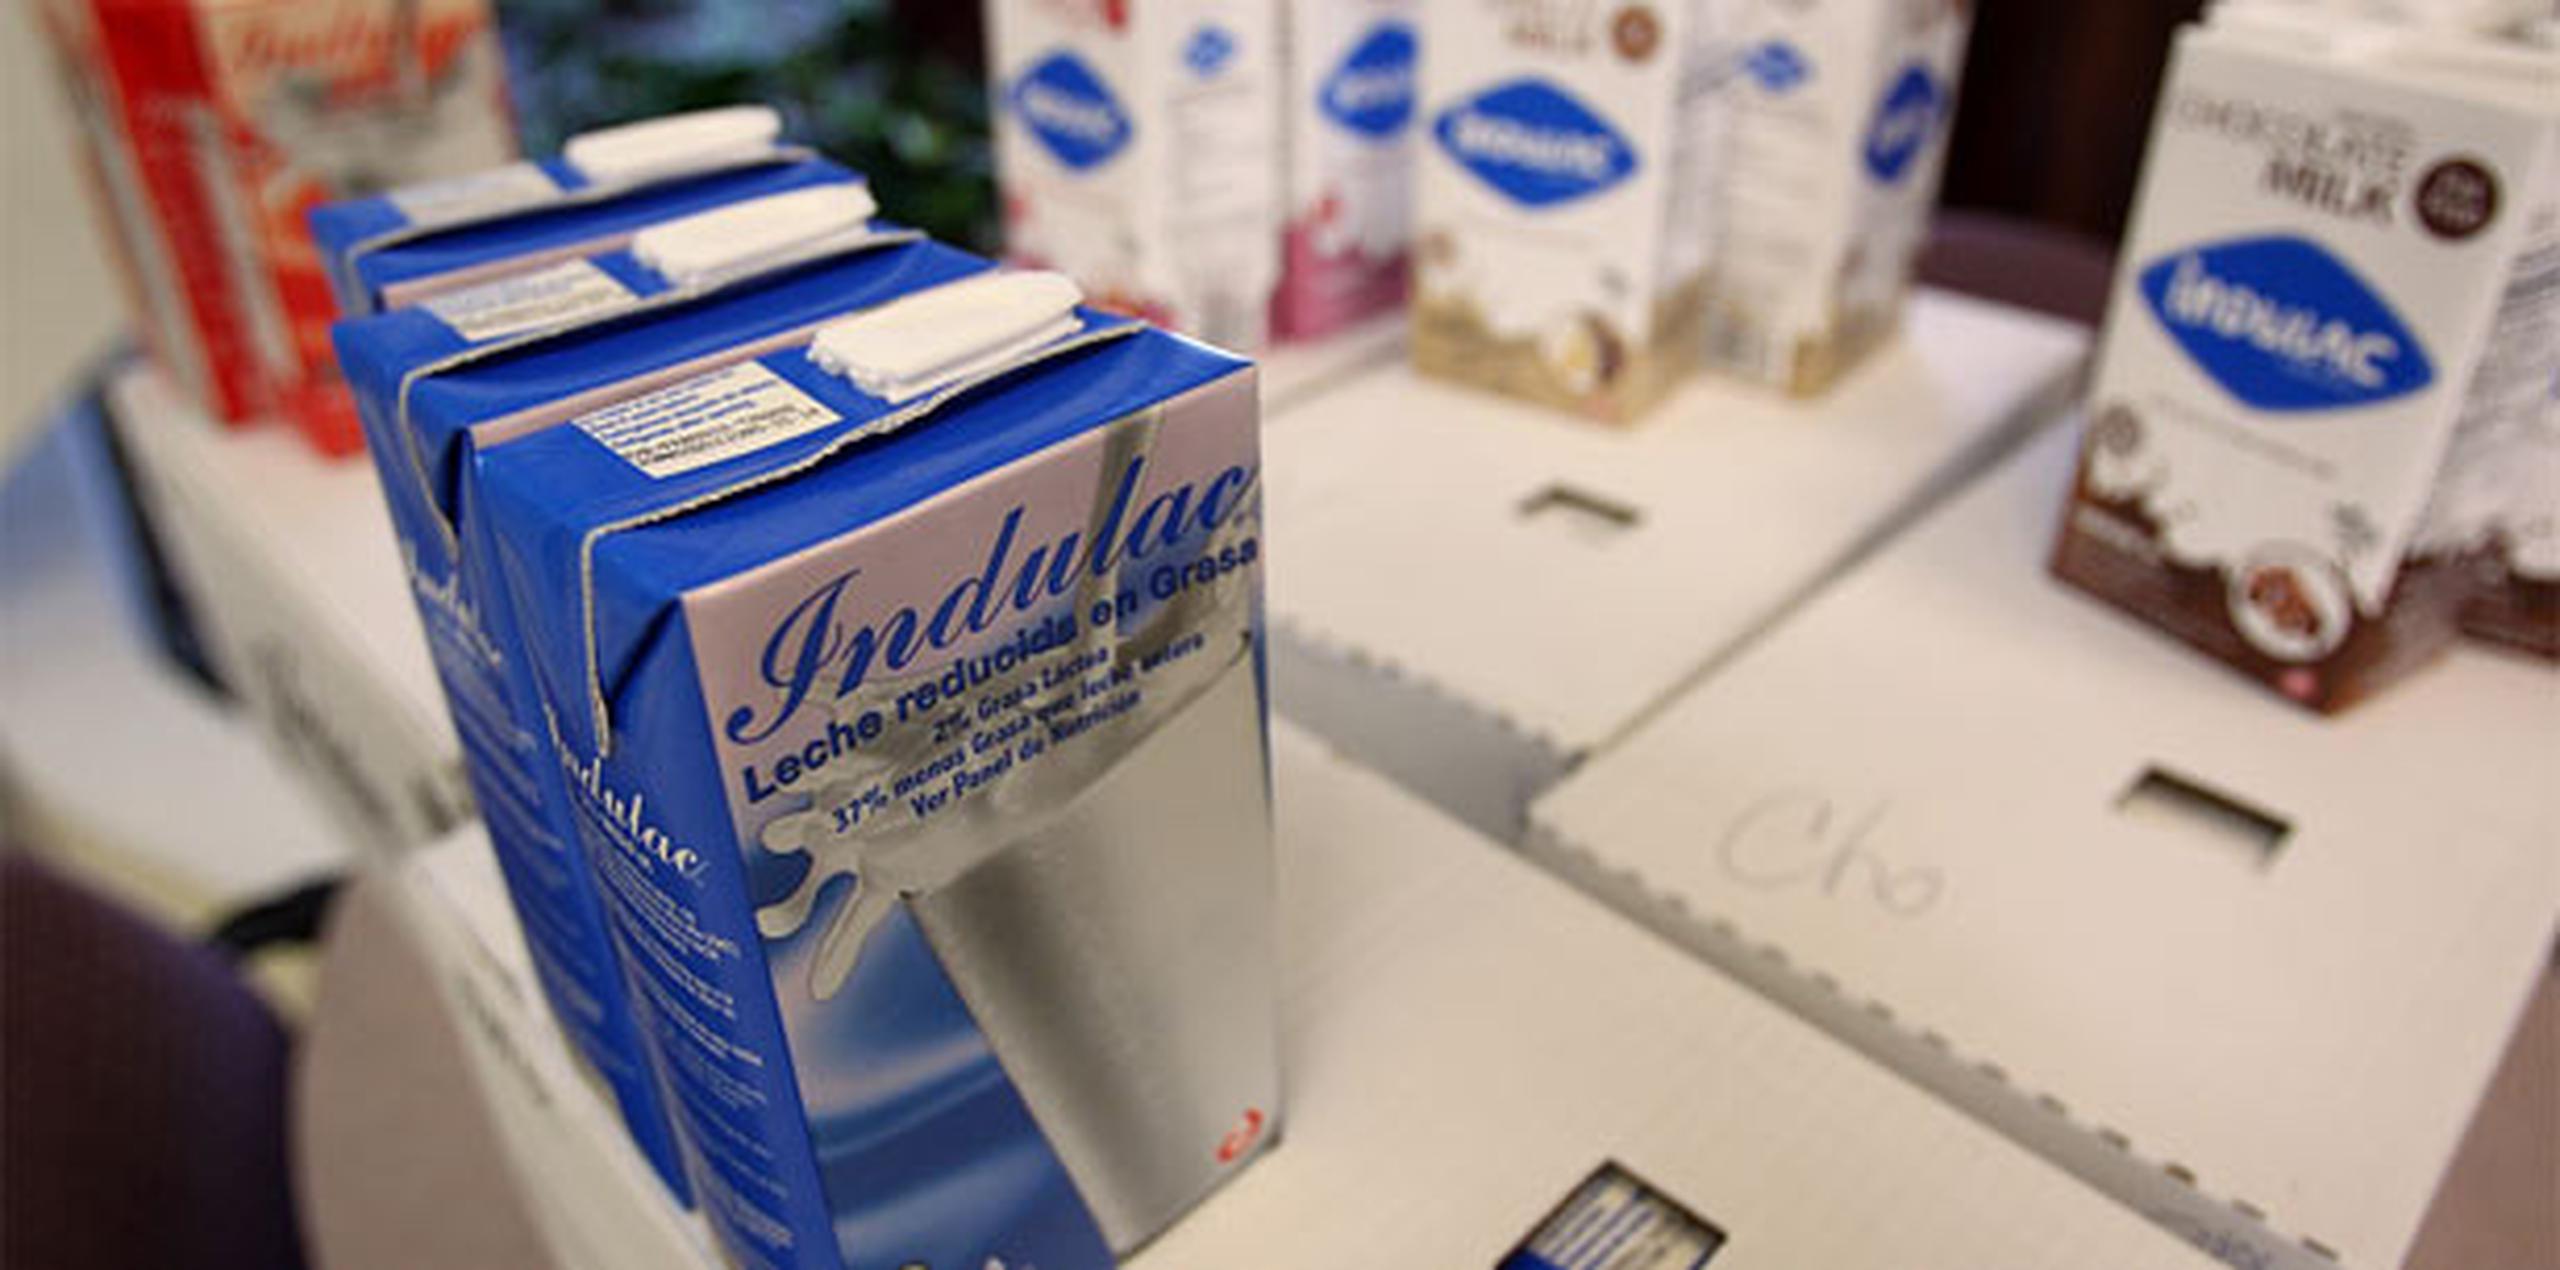 La secretaria lamentó la determinación, que atribuyó a la compañía INDULAC, de decomisar leche en Puerto Rico y afirmó que fue una decisión “unilateral”. (Archivo)